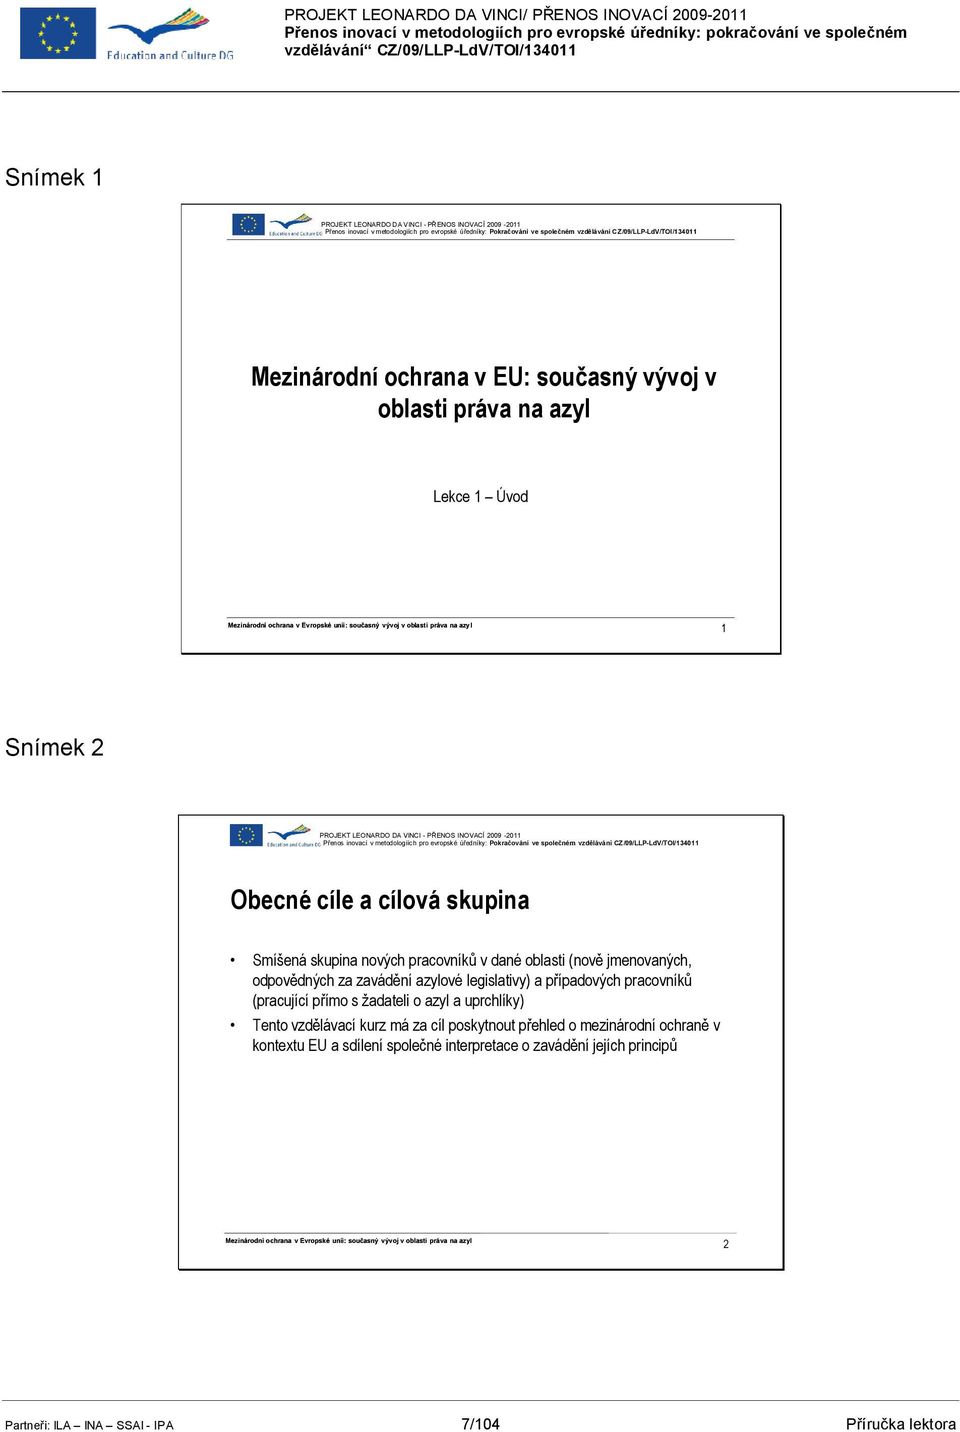 Přenos inovací v metodologiích pro evropské úředníky: Pokračování ve společném vzdělávání CZ/09/LLP-LdV/TOI/134011 Obecné cíle a cílová skupina Smíšená skupina nových pracovníků v dané oblasti (nově